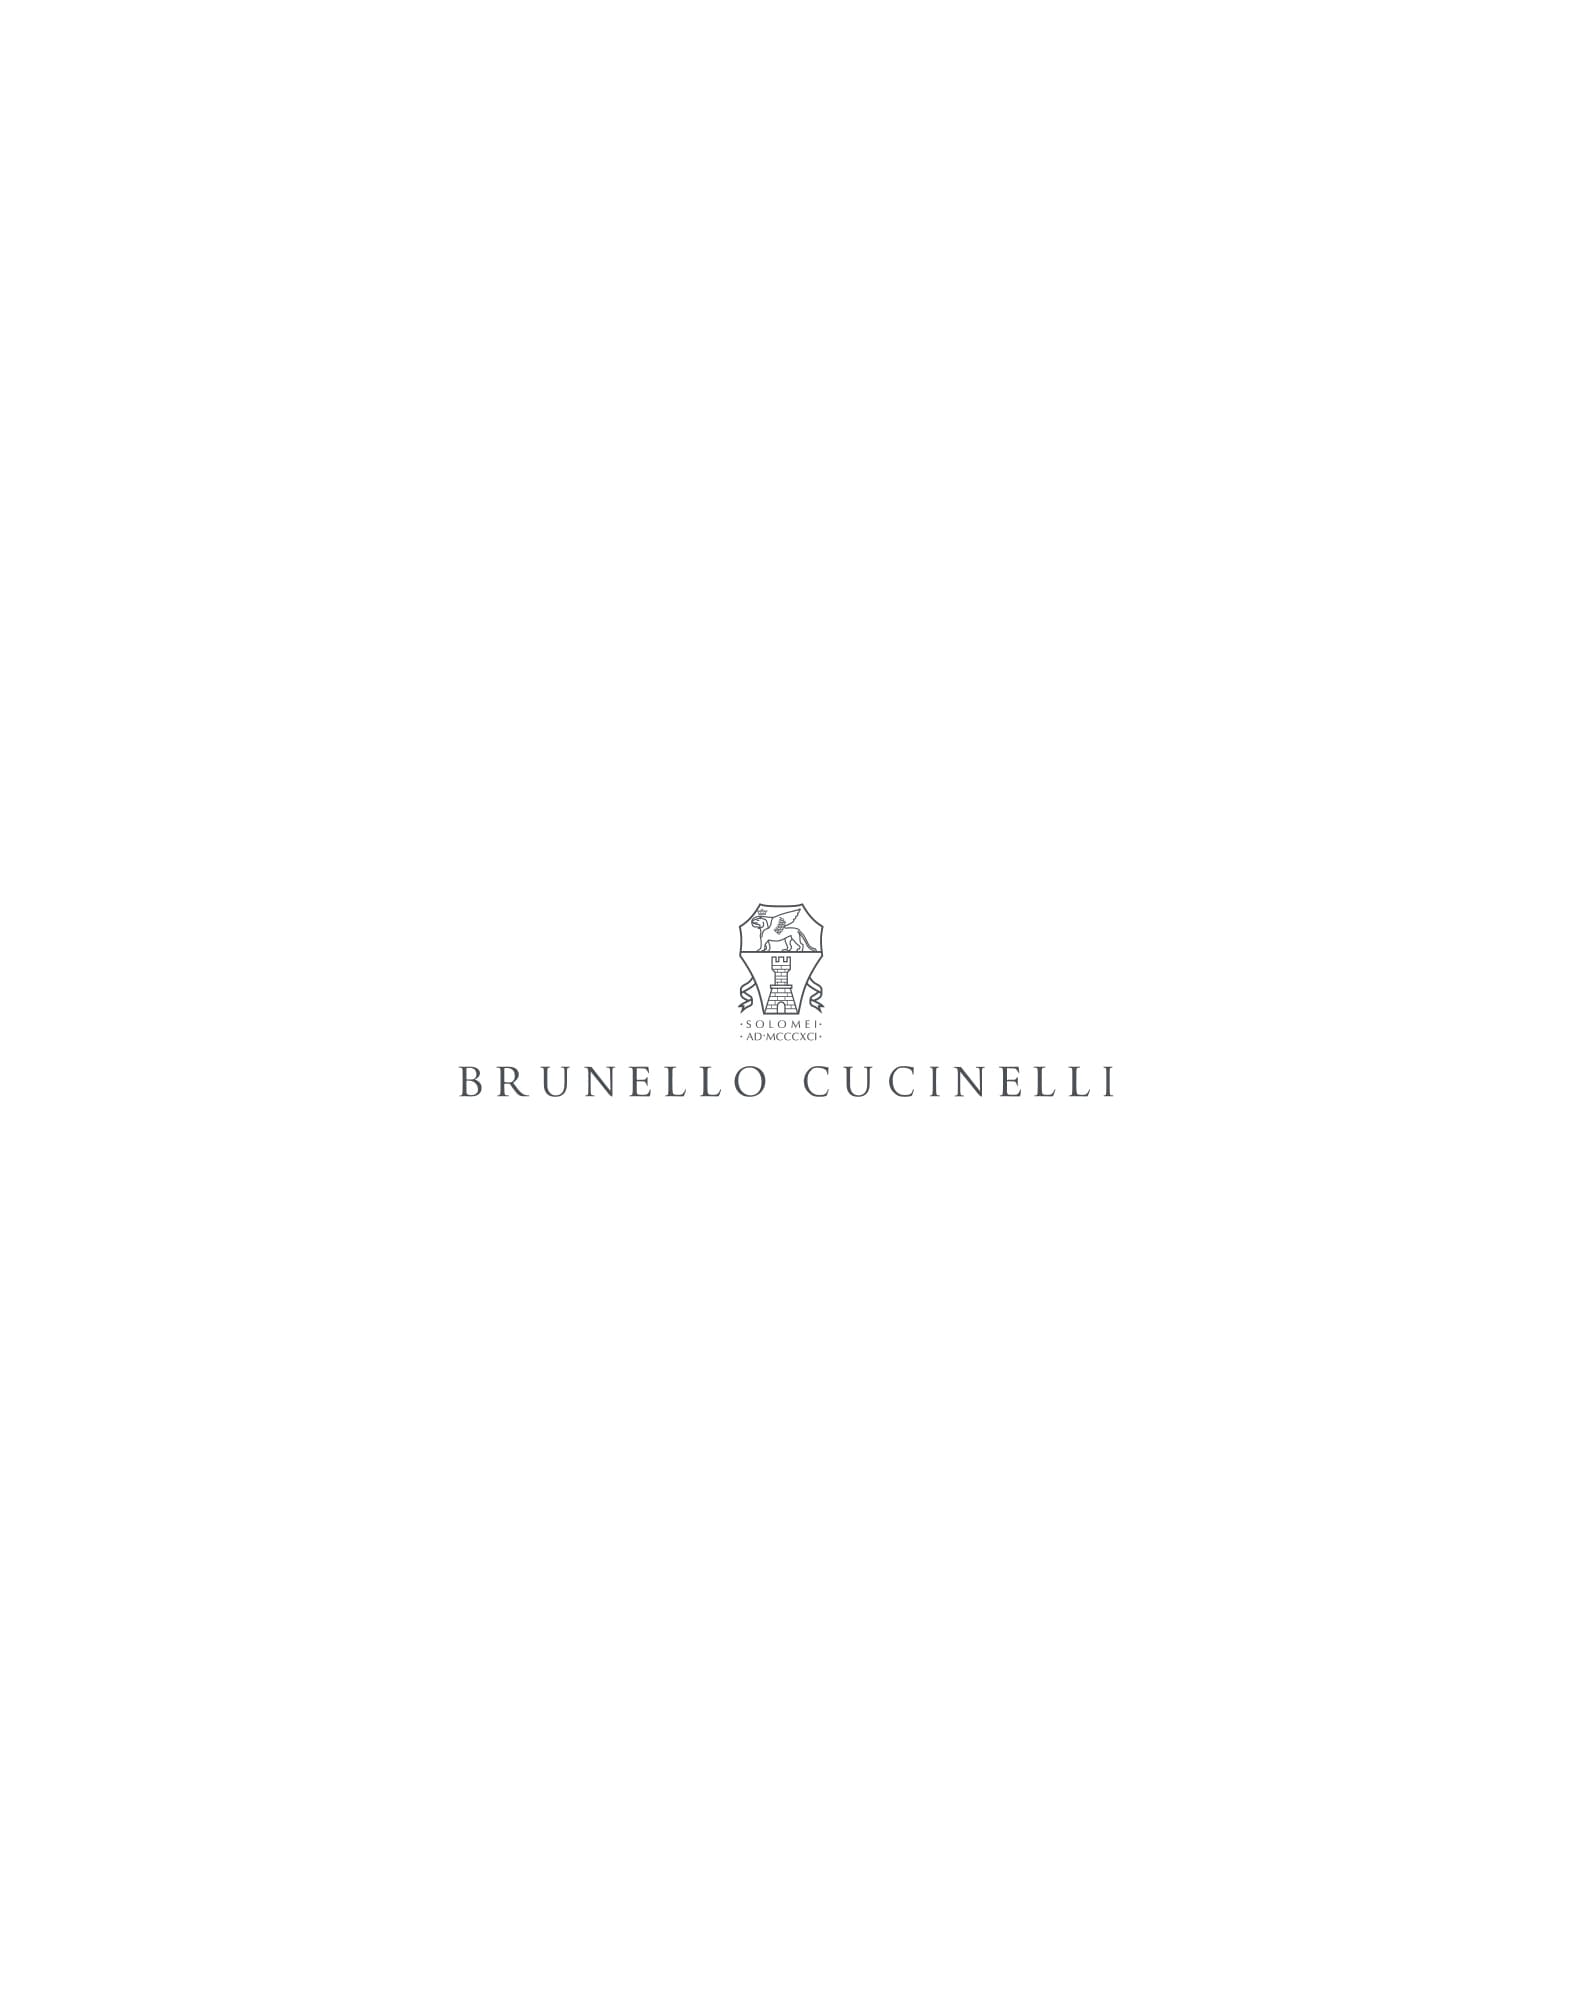 Blazer de lana, seda y lino Gris Perla Hombre - Brunello Cucinelli 